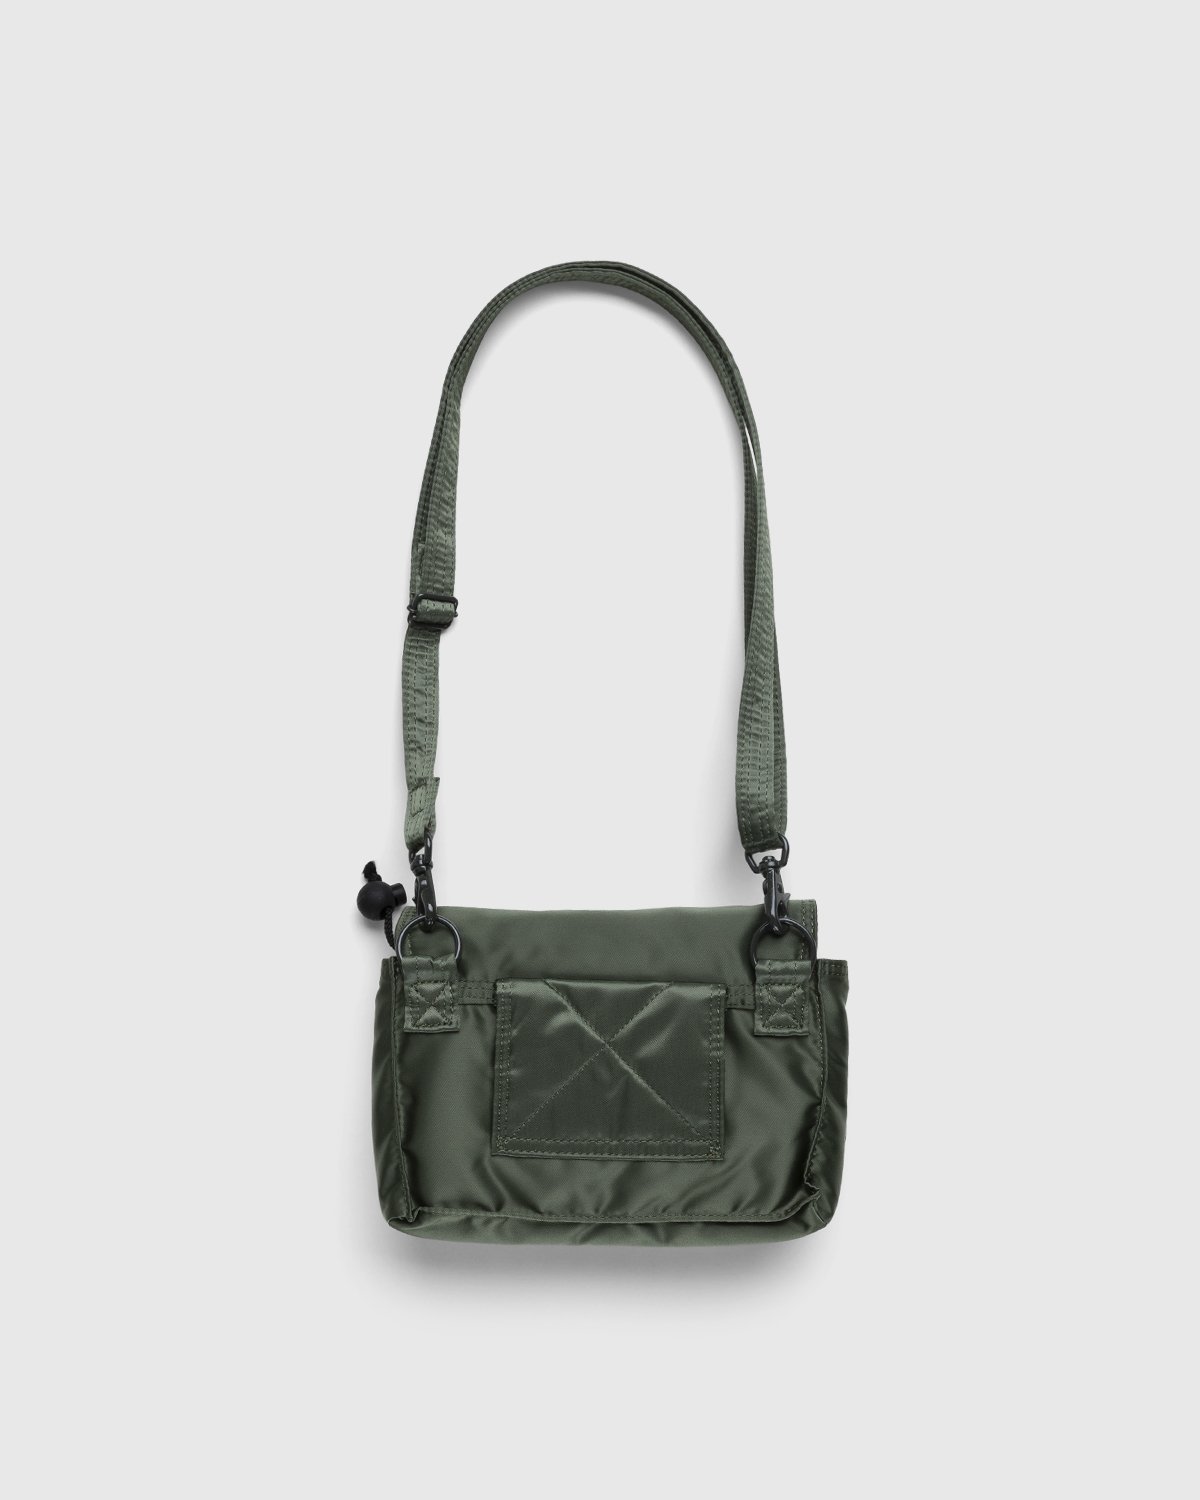 Porter-Yoshida & Co. - Tanker Clip Shoulder Bag Sage Green - Accessories - Green - Image 2